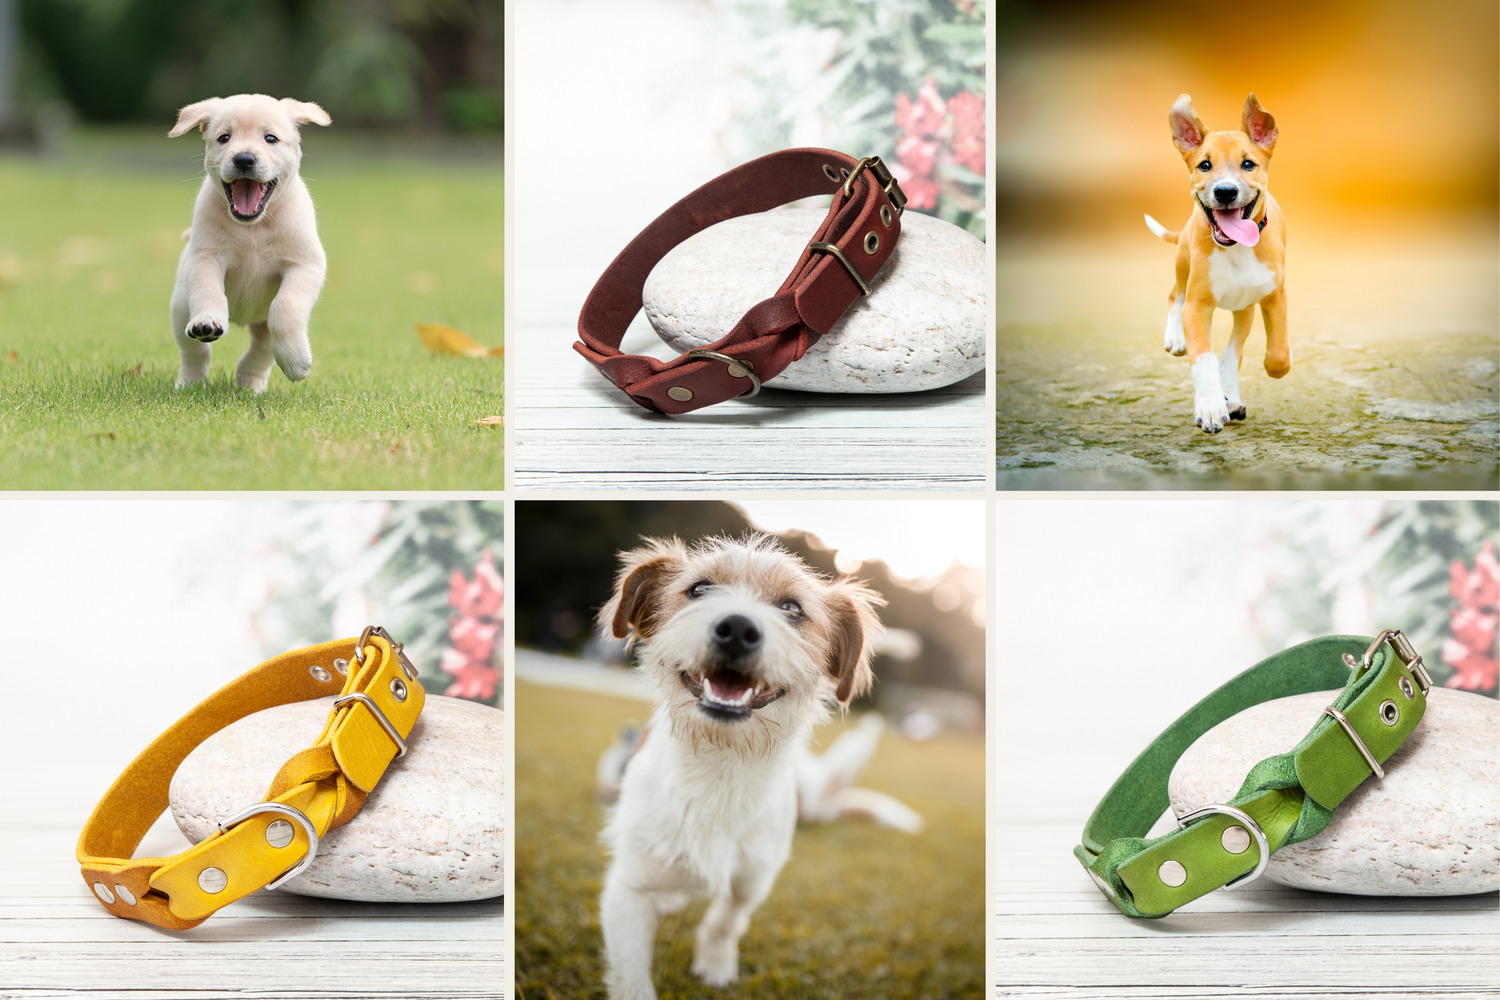 Halsband für Hunde. Handgefertigtes Lederhalsband in saisonalen Farben. Hundehalsband.